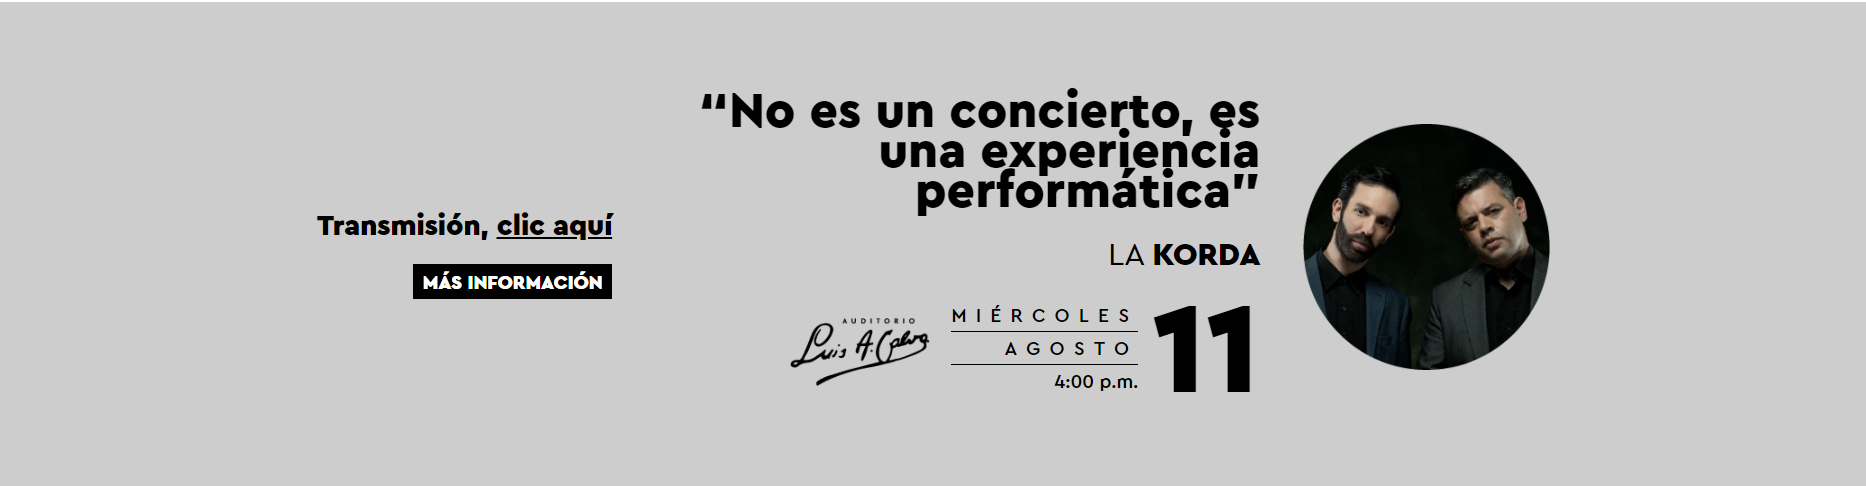 No_es_un_concierto_es_una_experiencia_performática_-_UIS